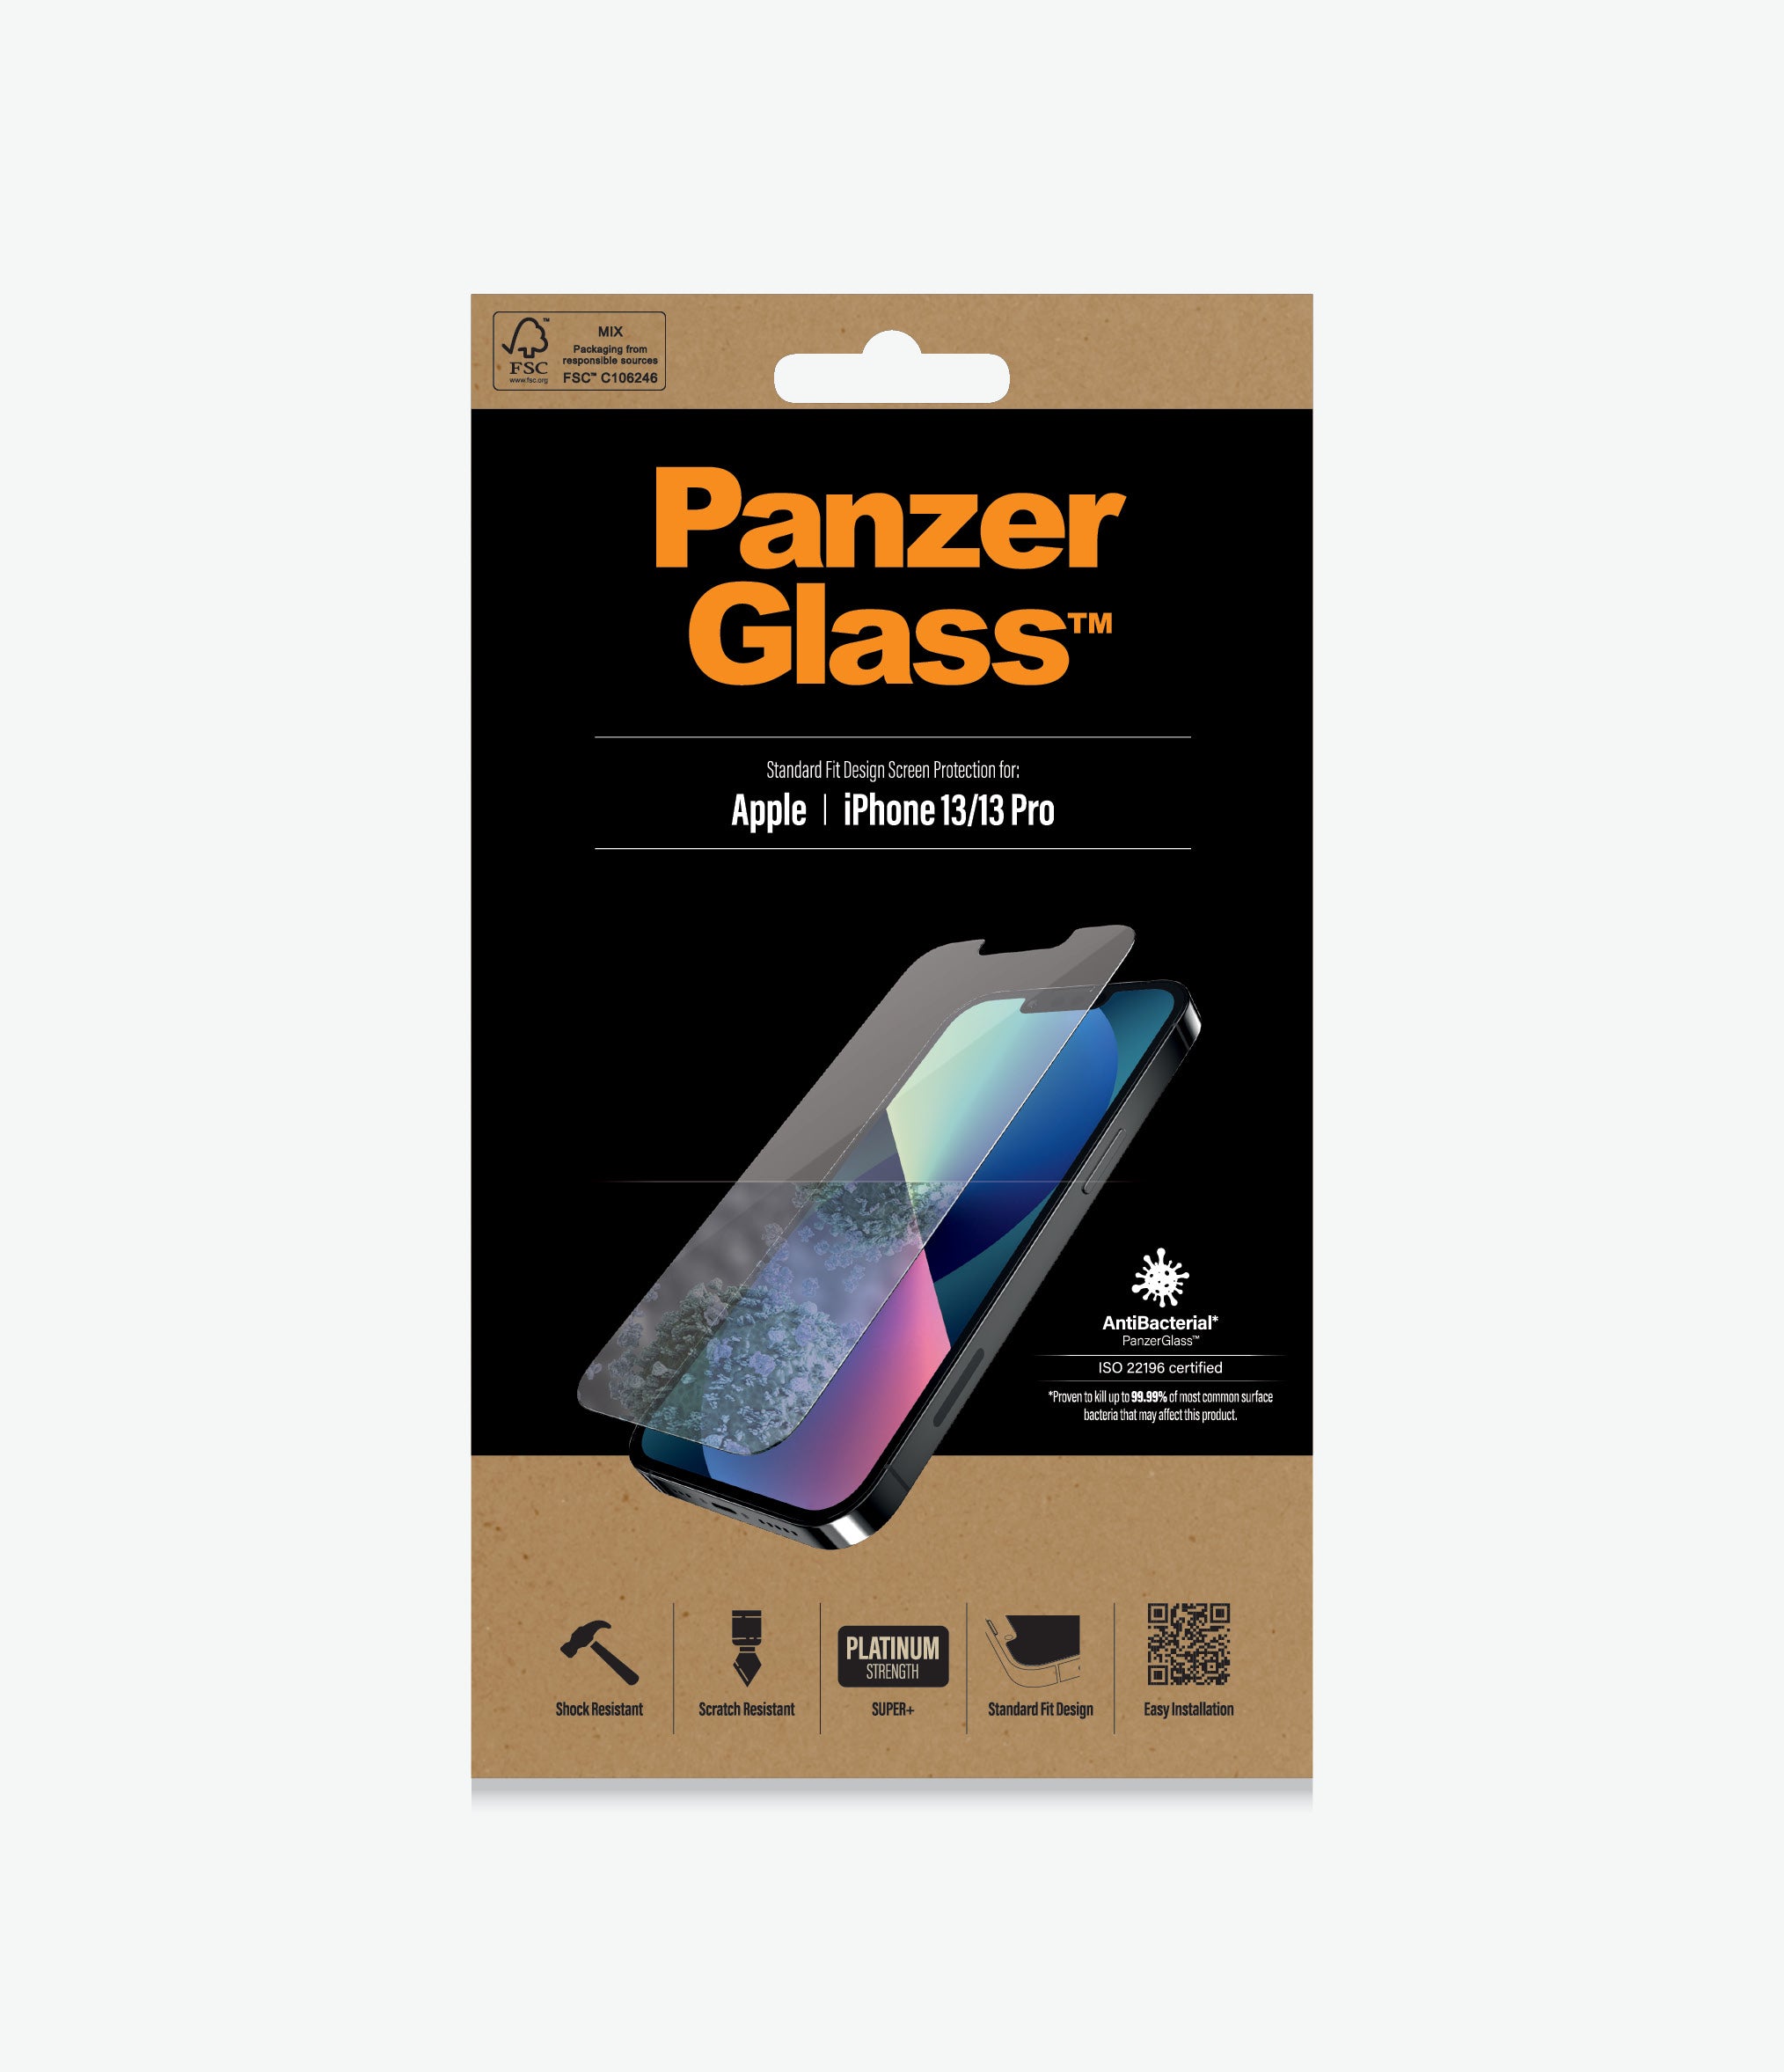 PanzerGlass iPhone 13/13 Pro thumbnail